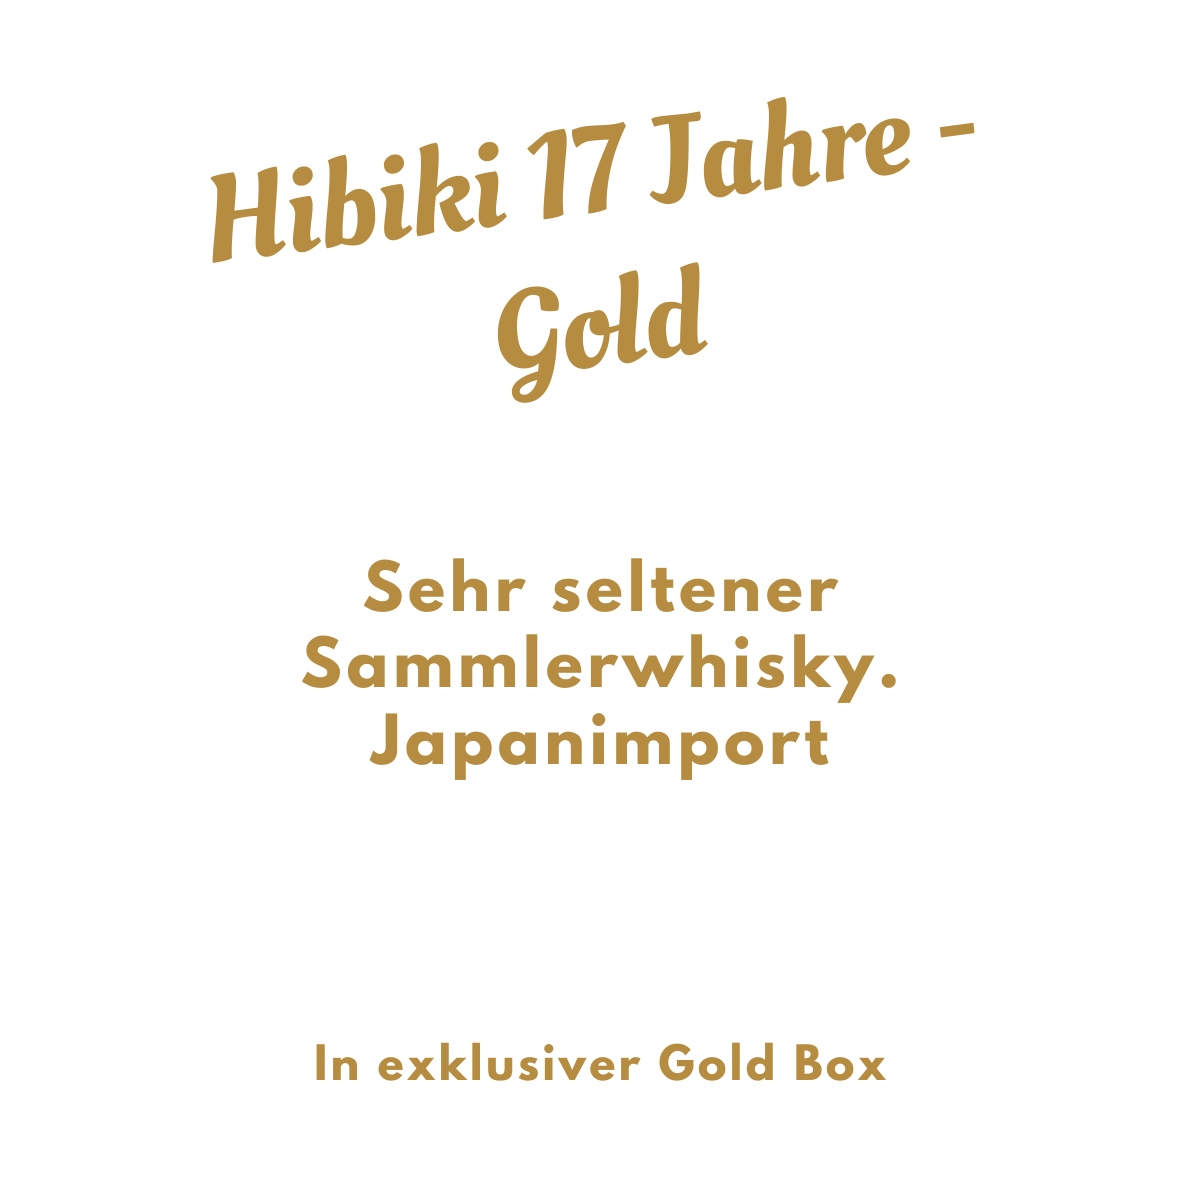 Hibiki 17 Jahre Gold Verpackung (0,7l / 43% Vol.) - sehr selten  (Sammlerstück/Sonderregel)